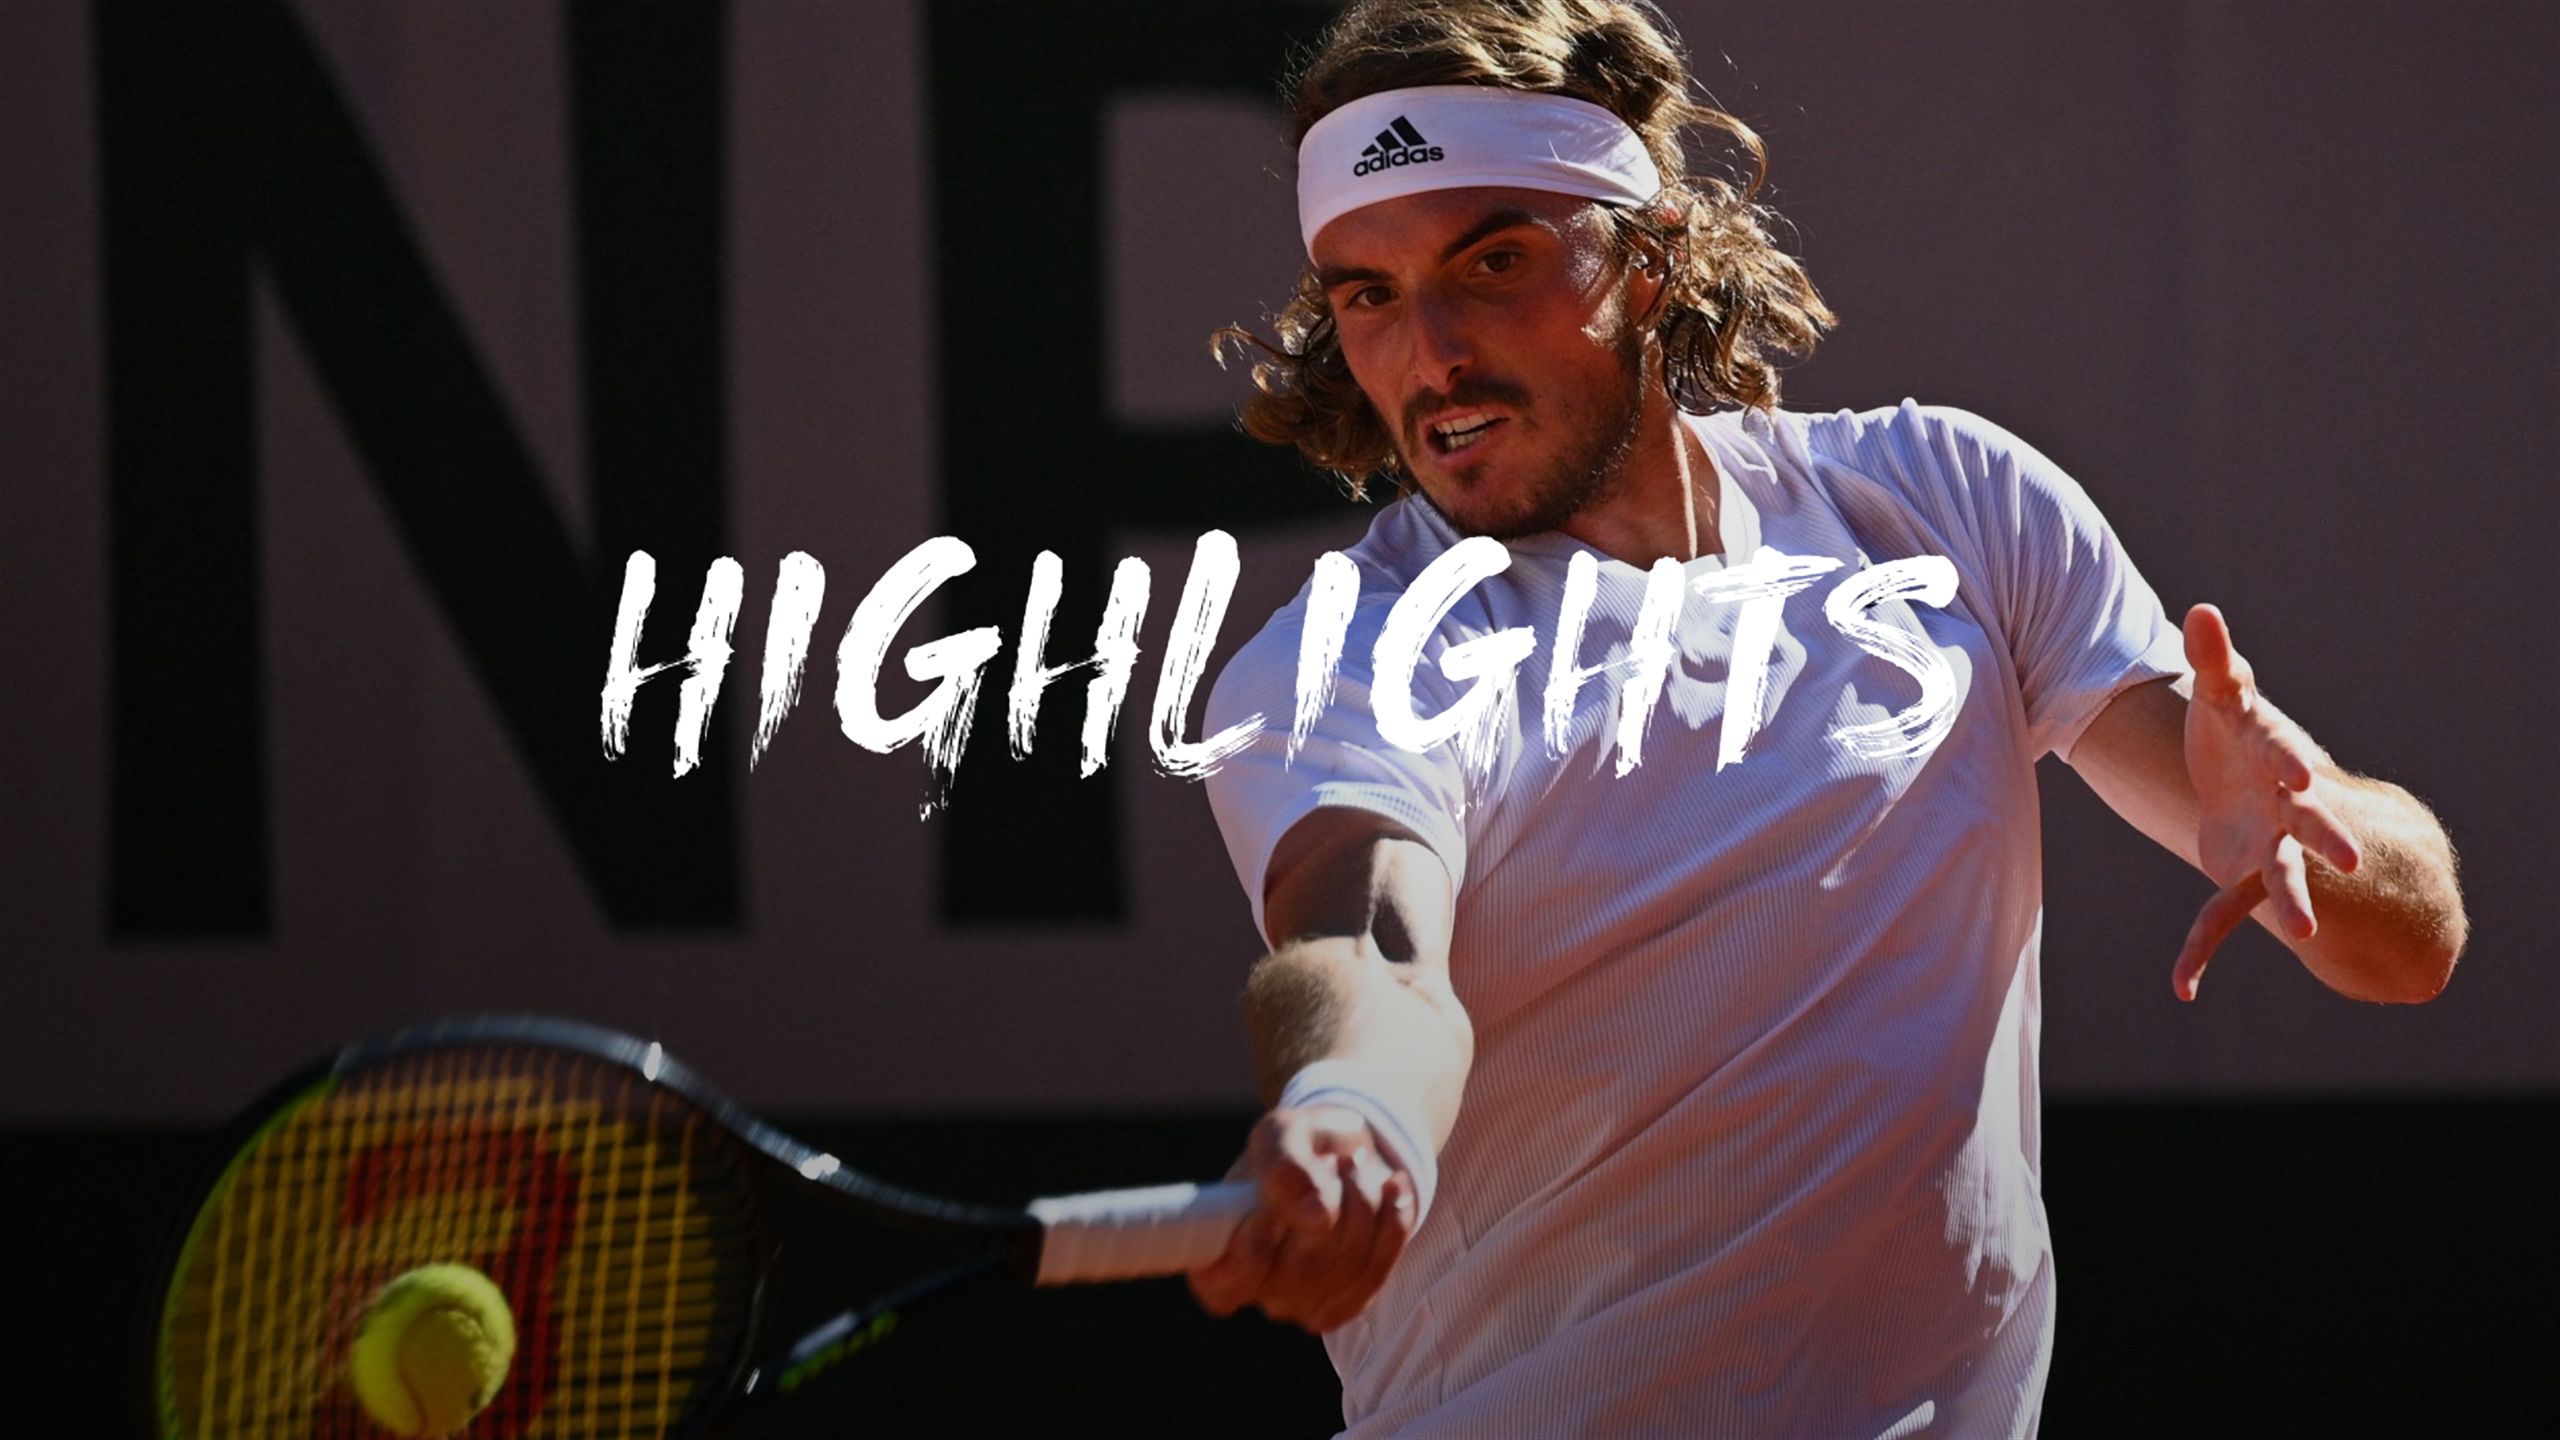 French Open Alexander Zverev - Stefanos Tsitsipas Halbfinale Herren Einzel - Highlights - Tennis Video